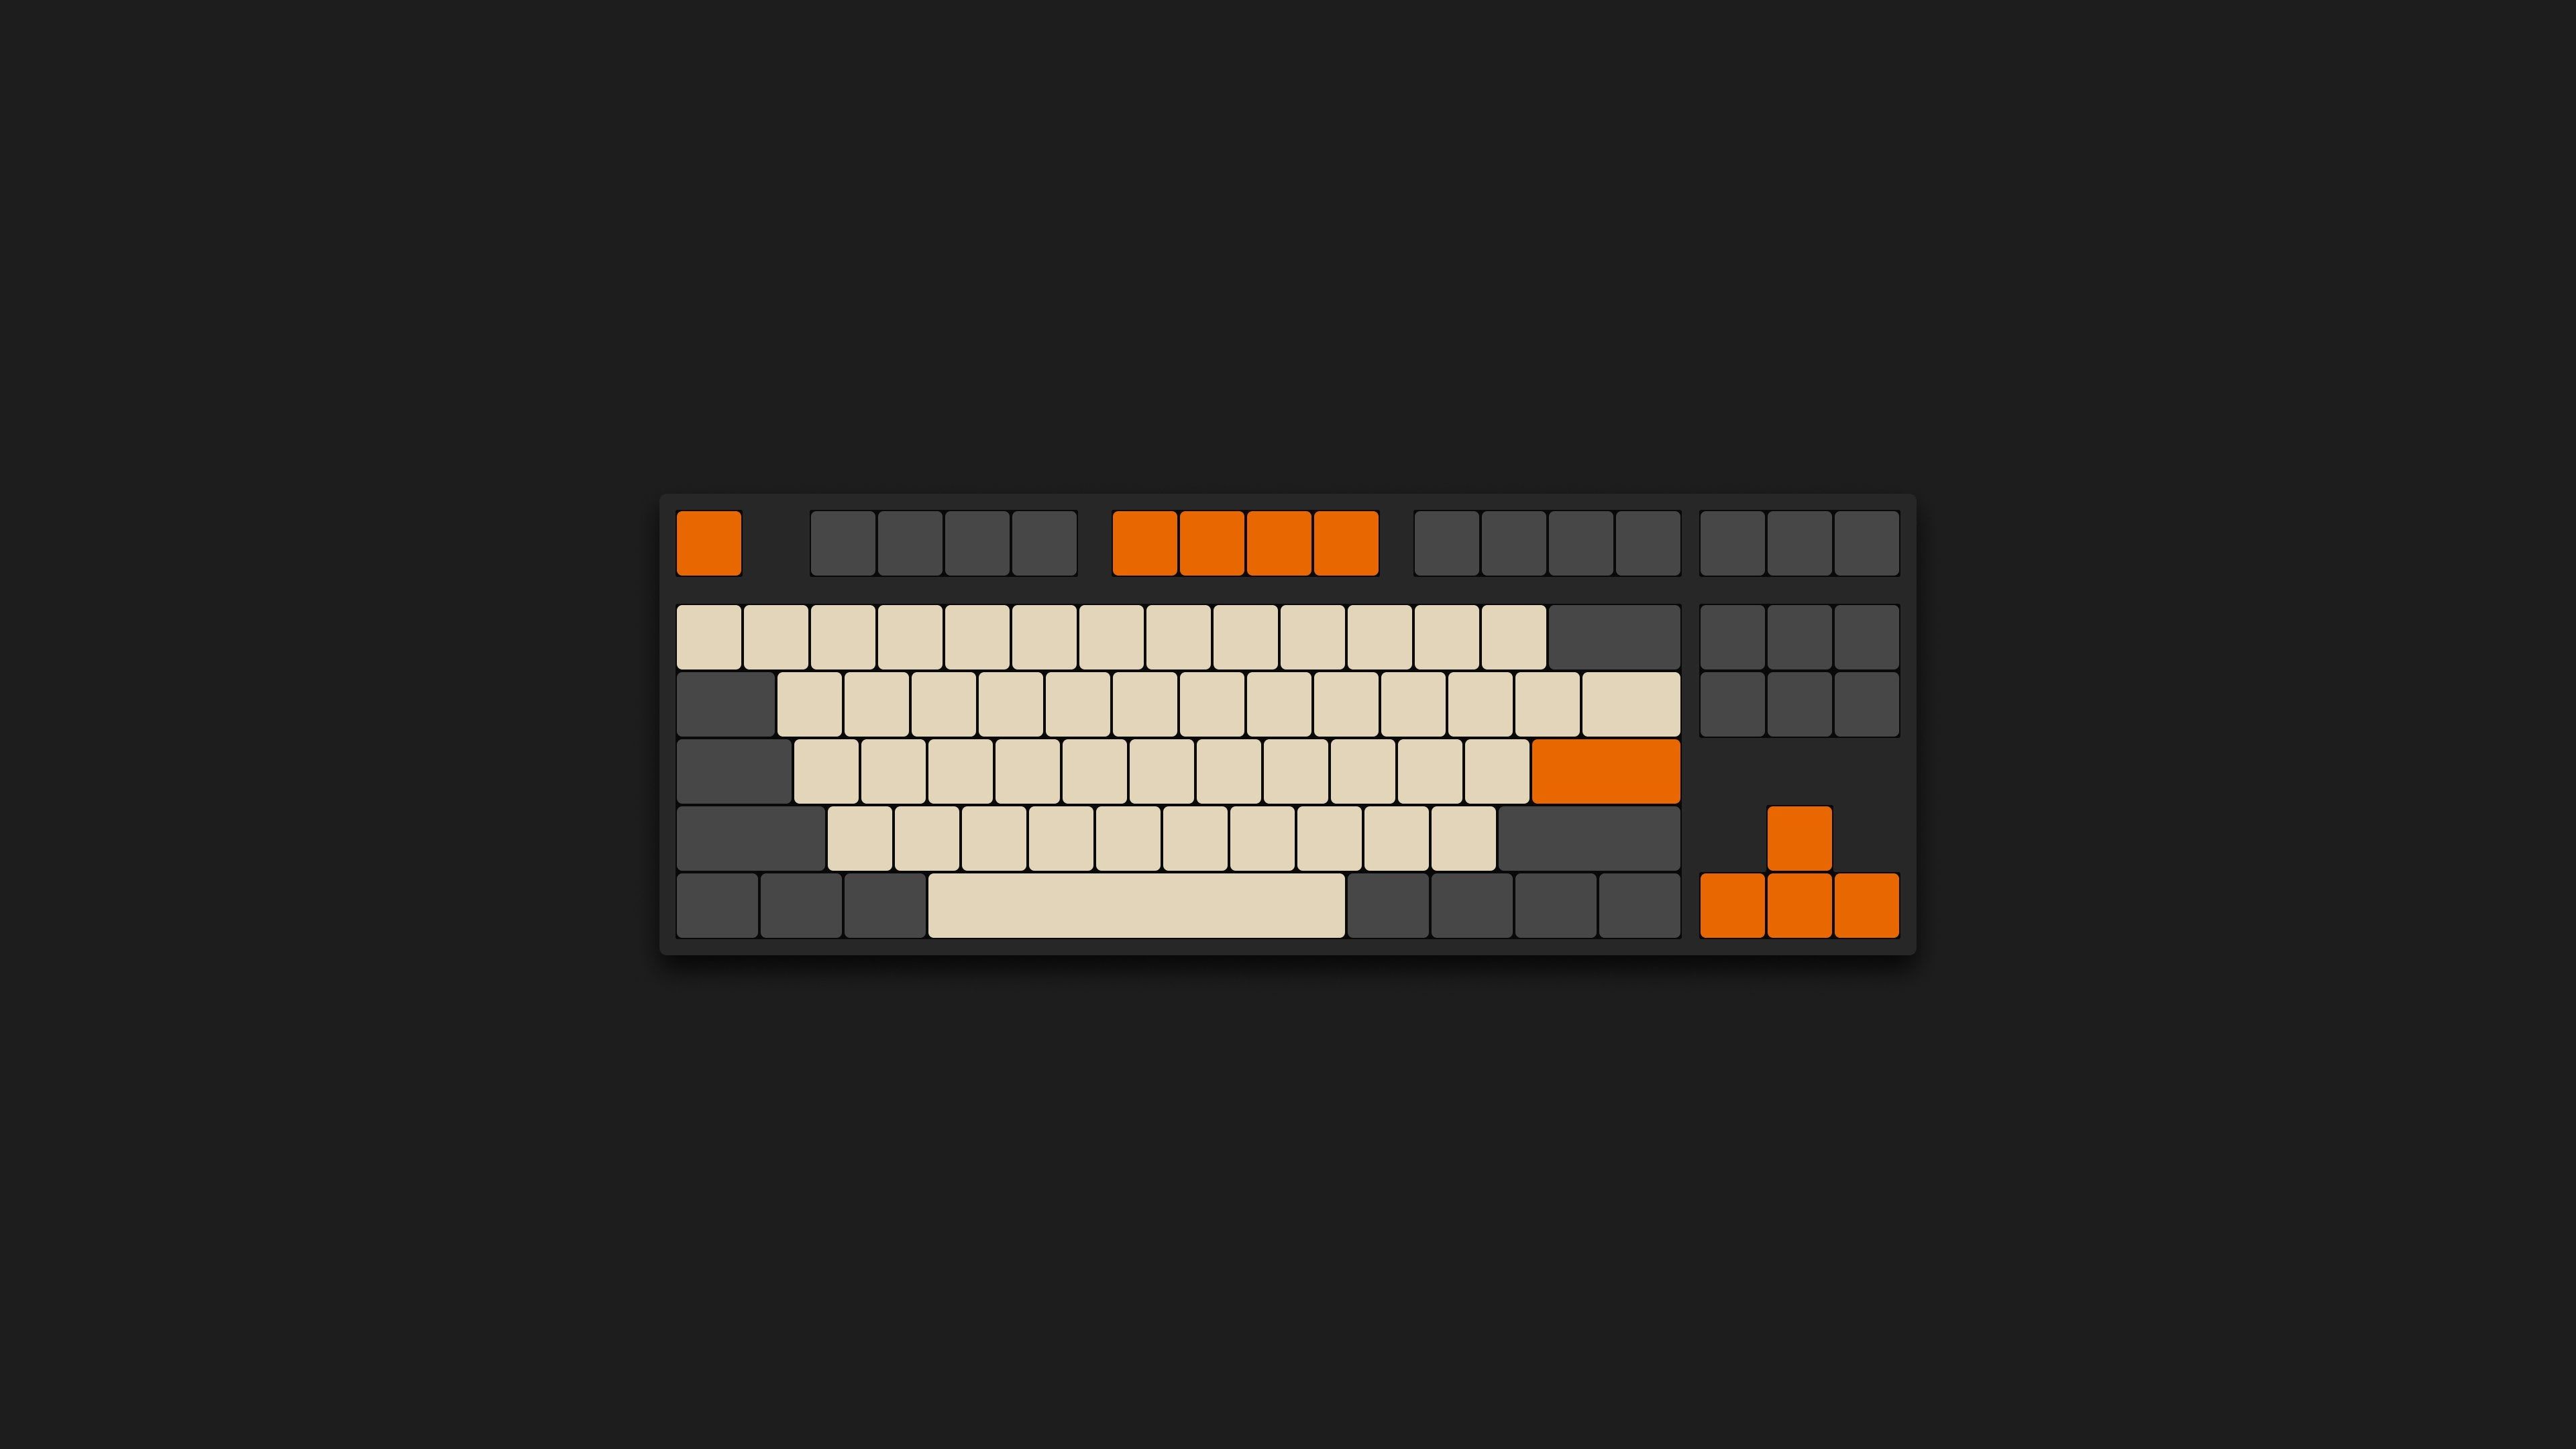 keyboard art 4K Minimal Keyboard Wallpaper (even more this time)